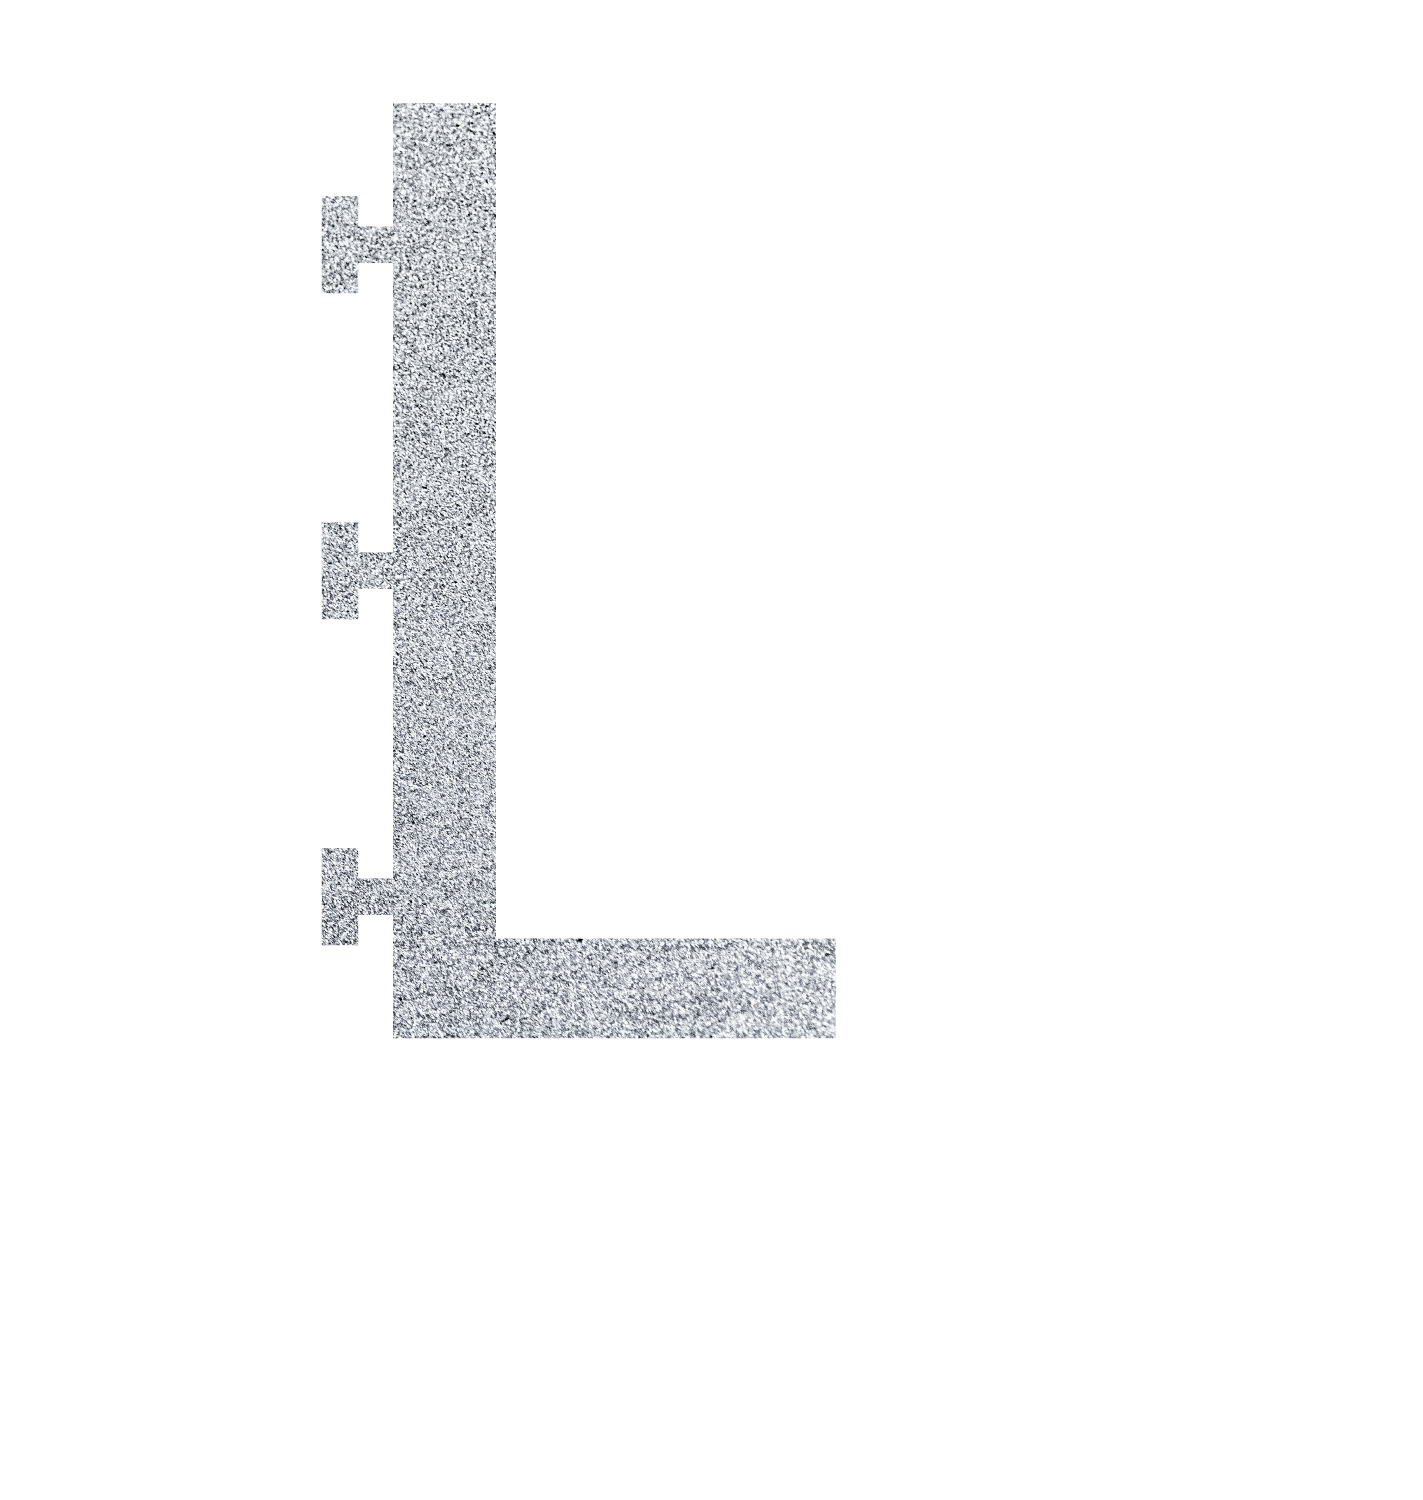 Lori Lofstrom